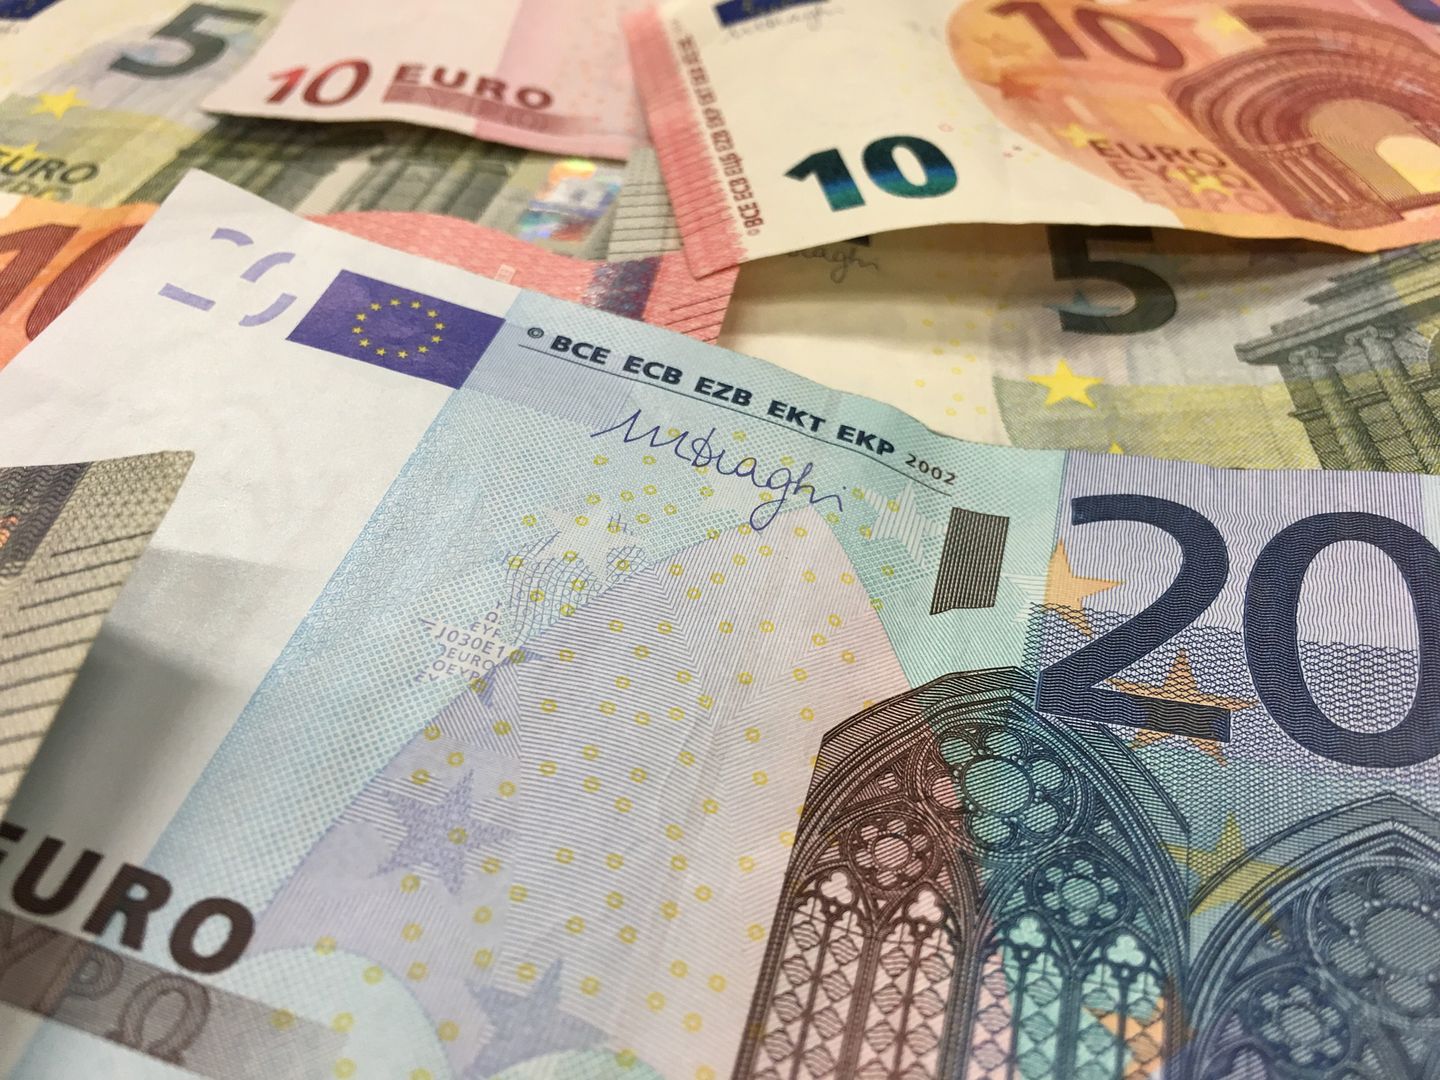 Syryjski uchodźca znalazł 150 tys. euro w szafce. Oddał je władzom